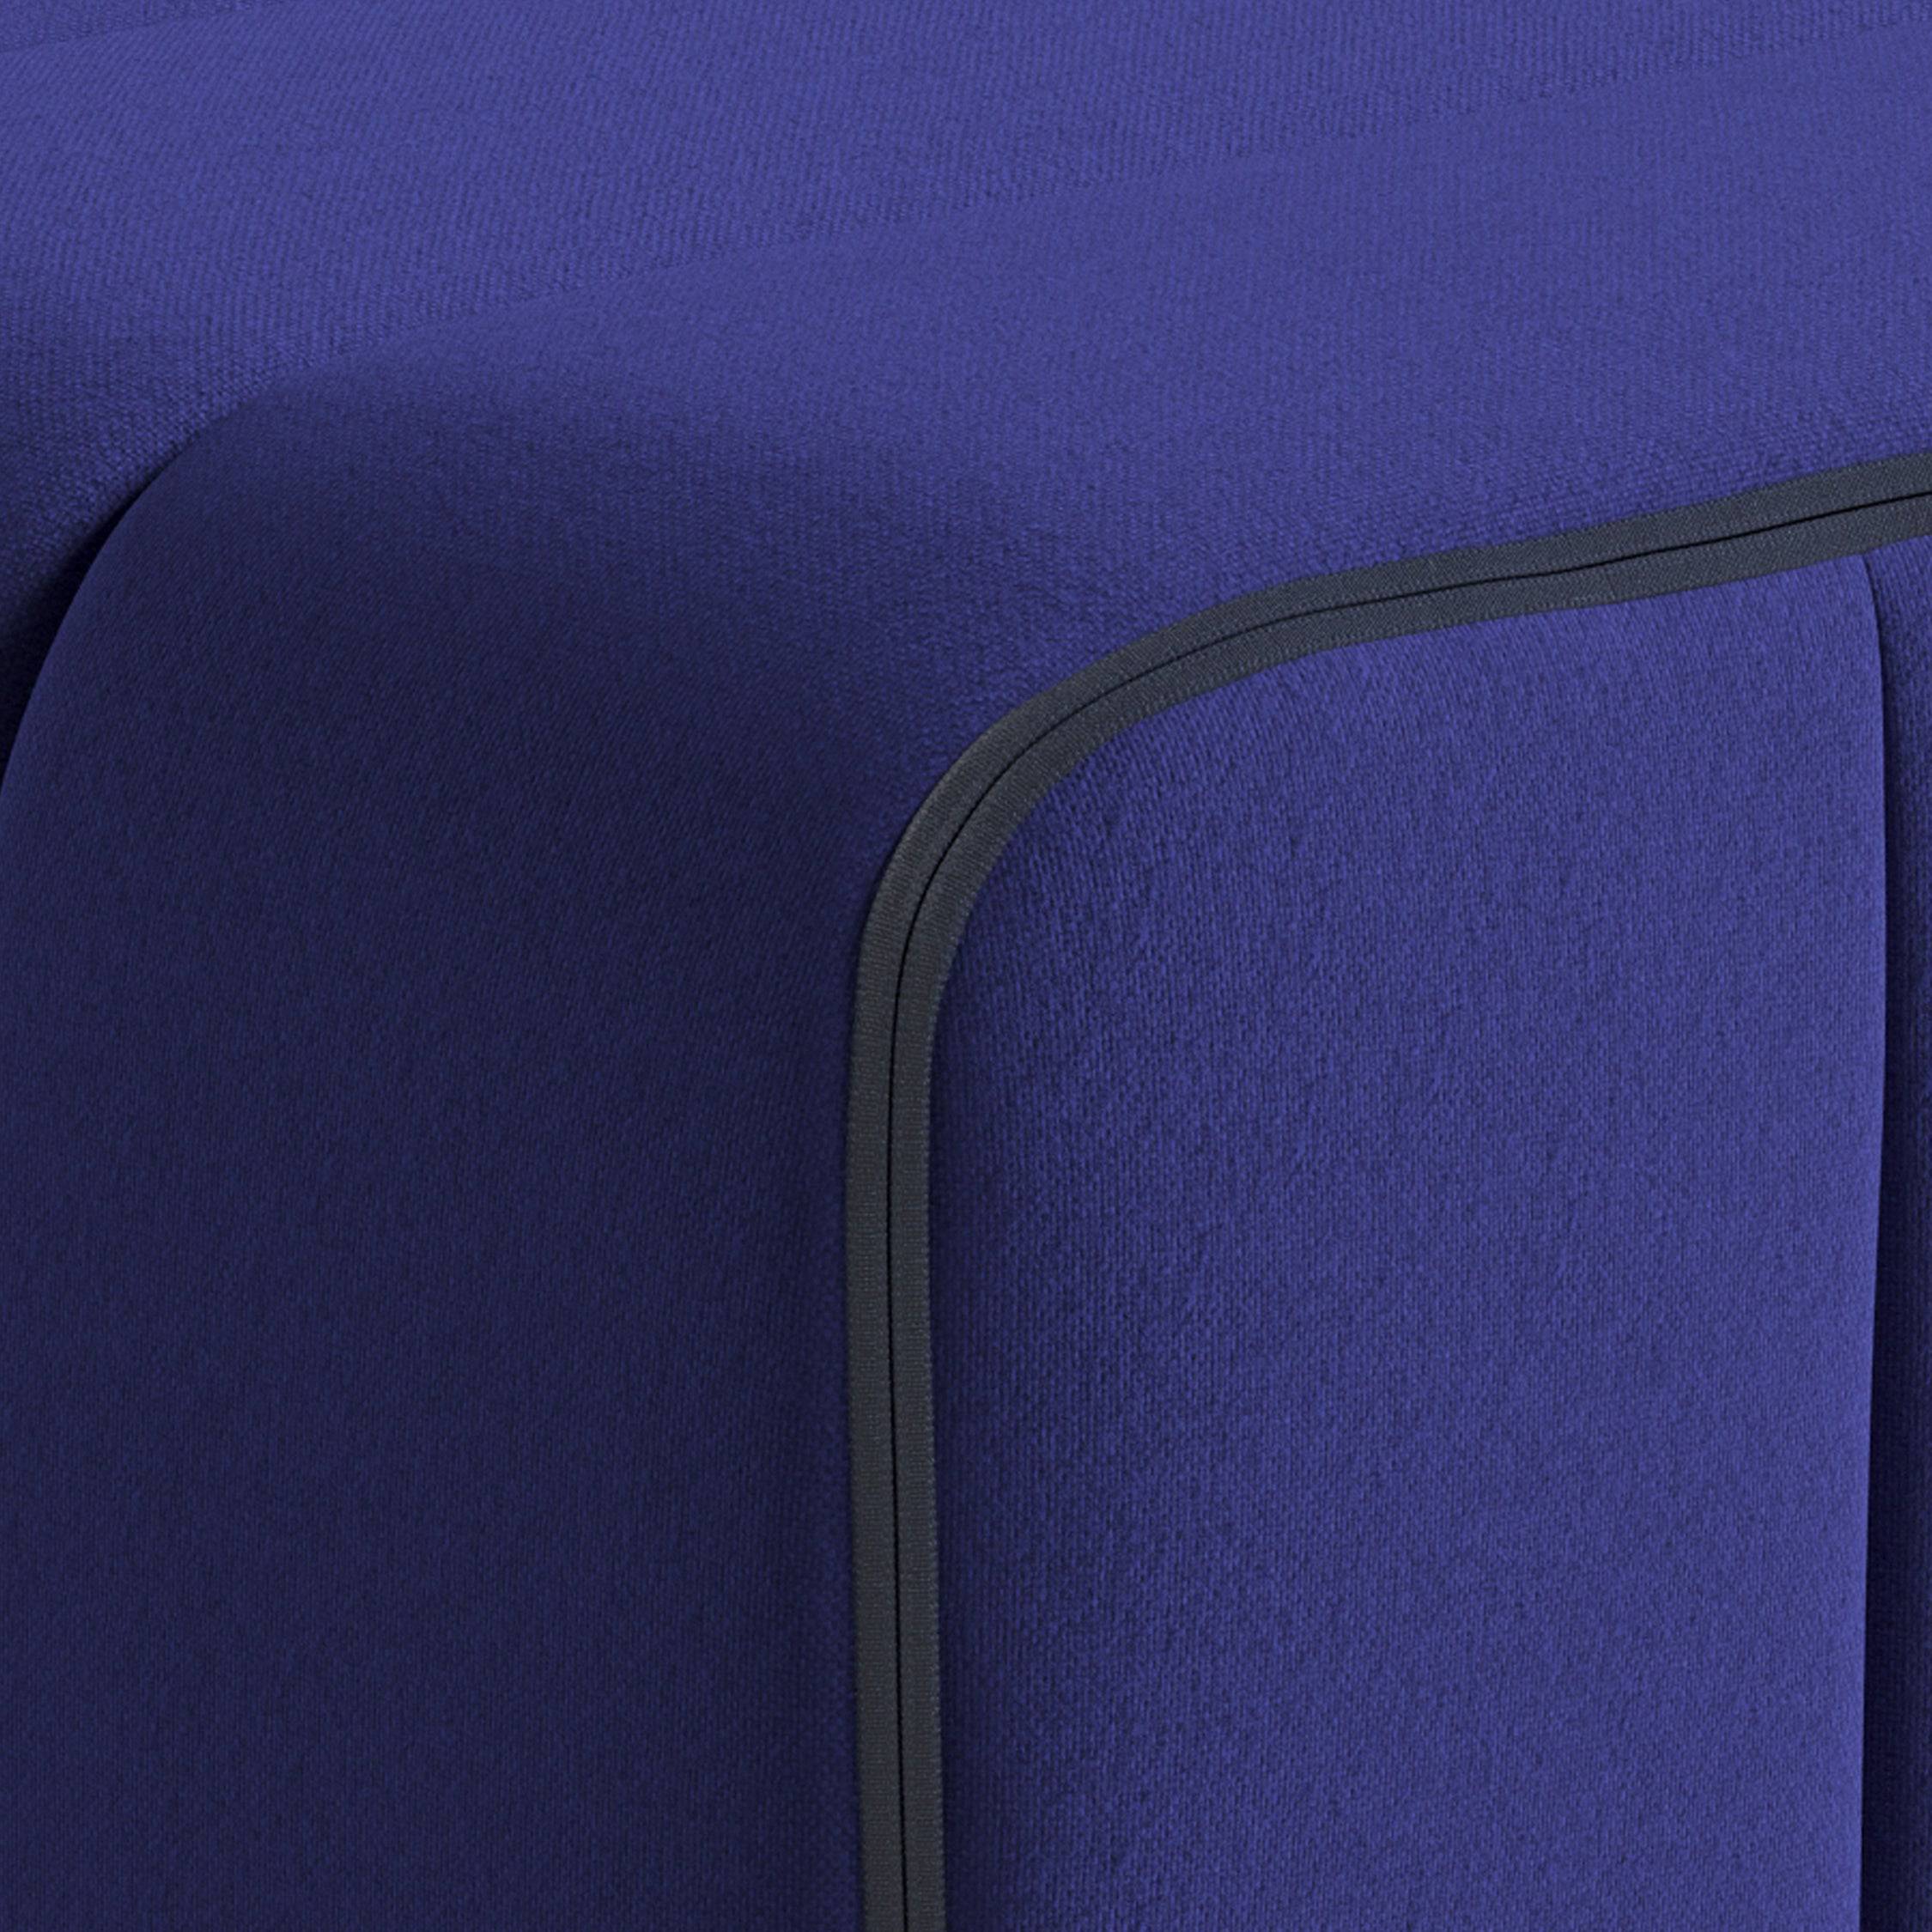 Curt Sofa System - Jet Blue Violett